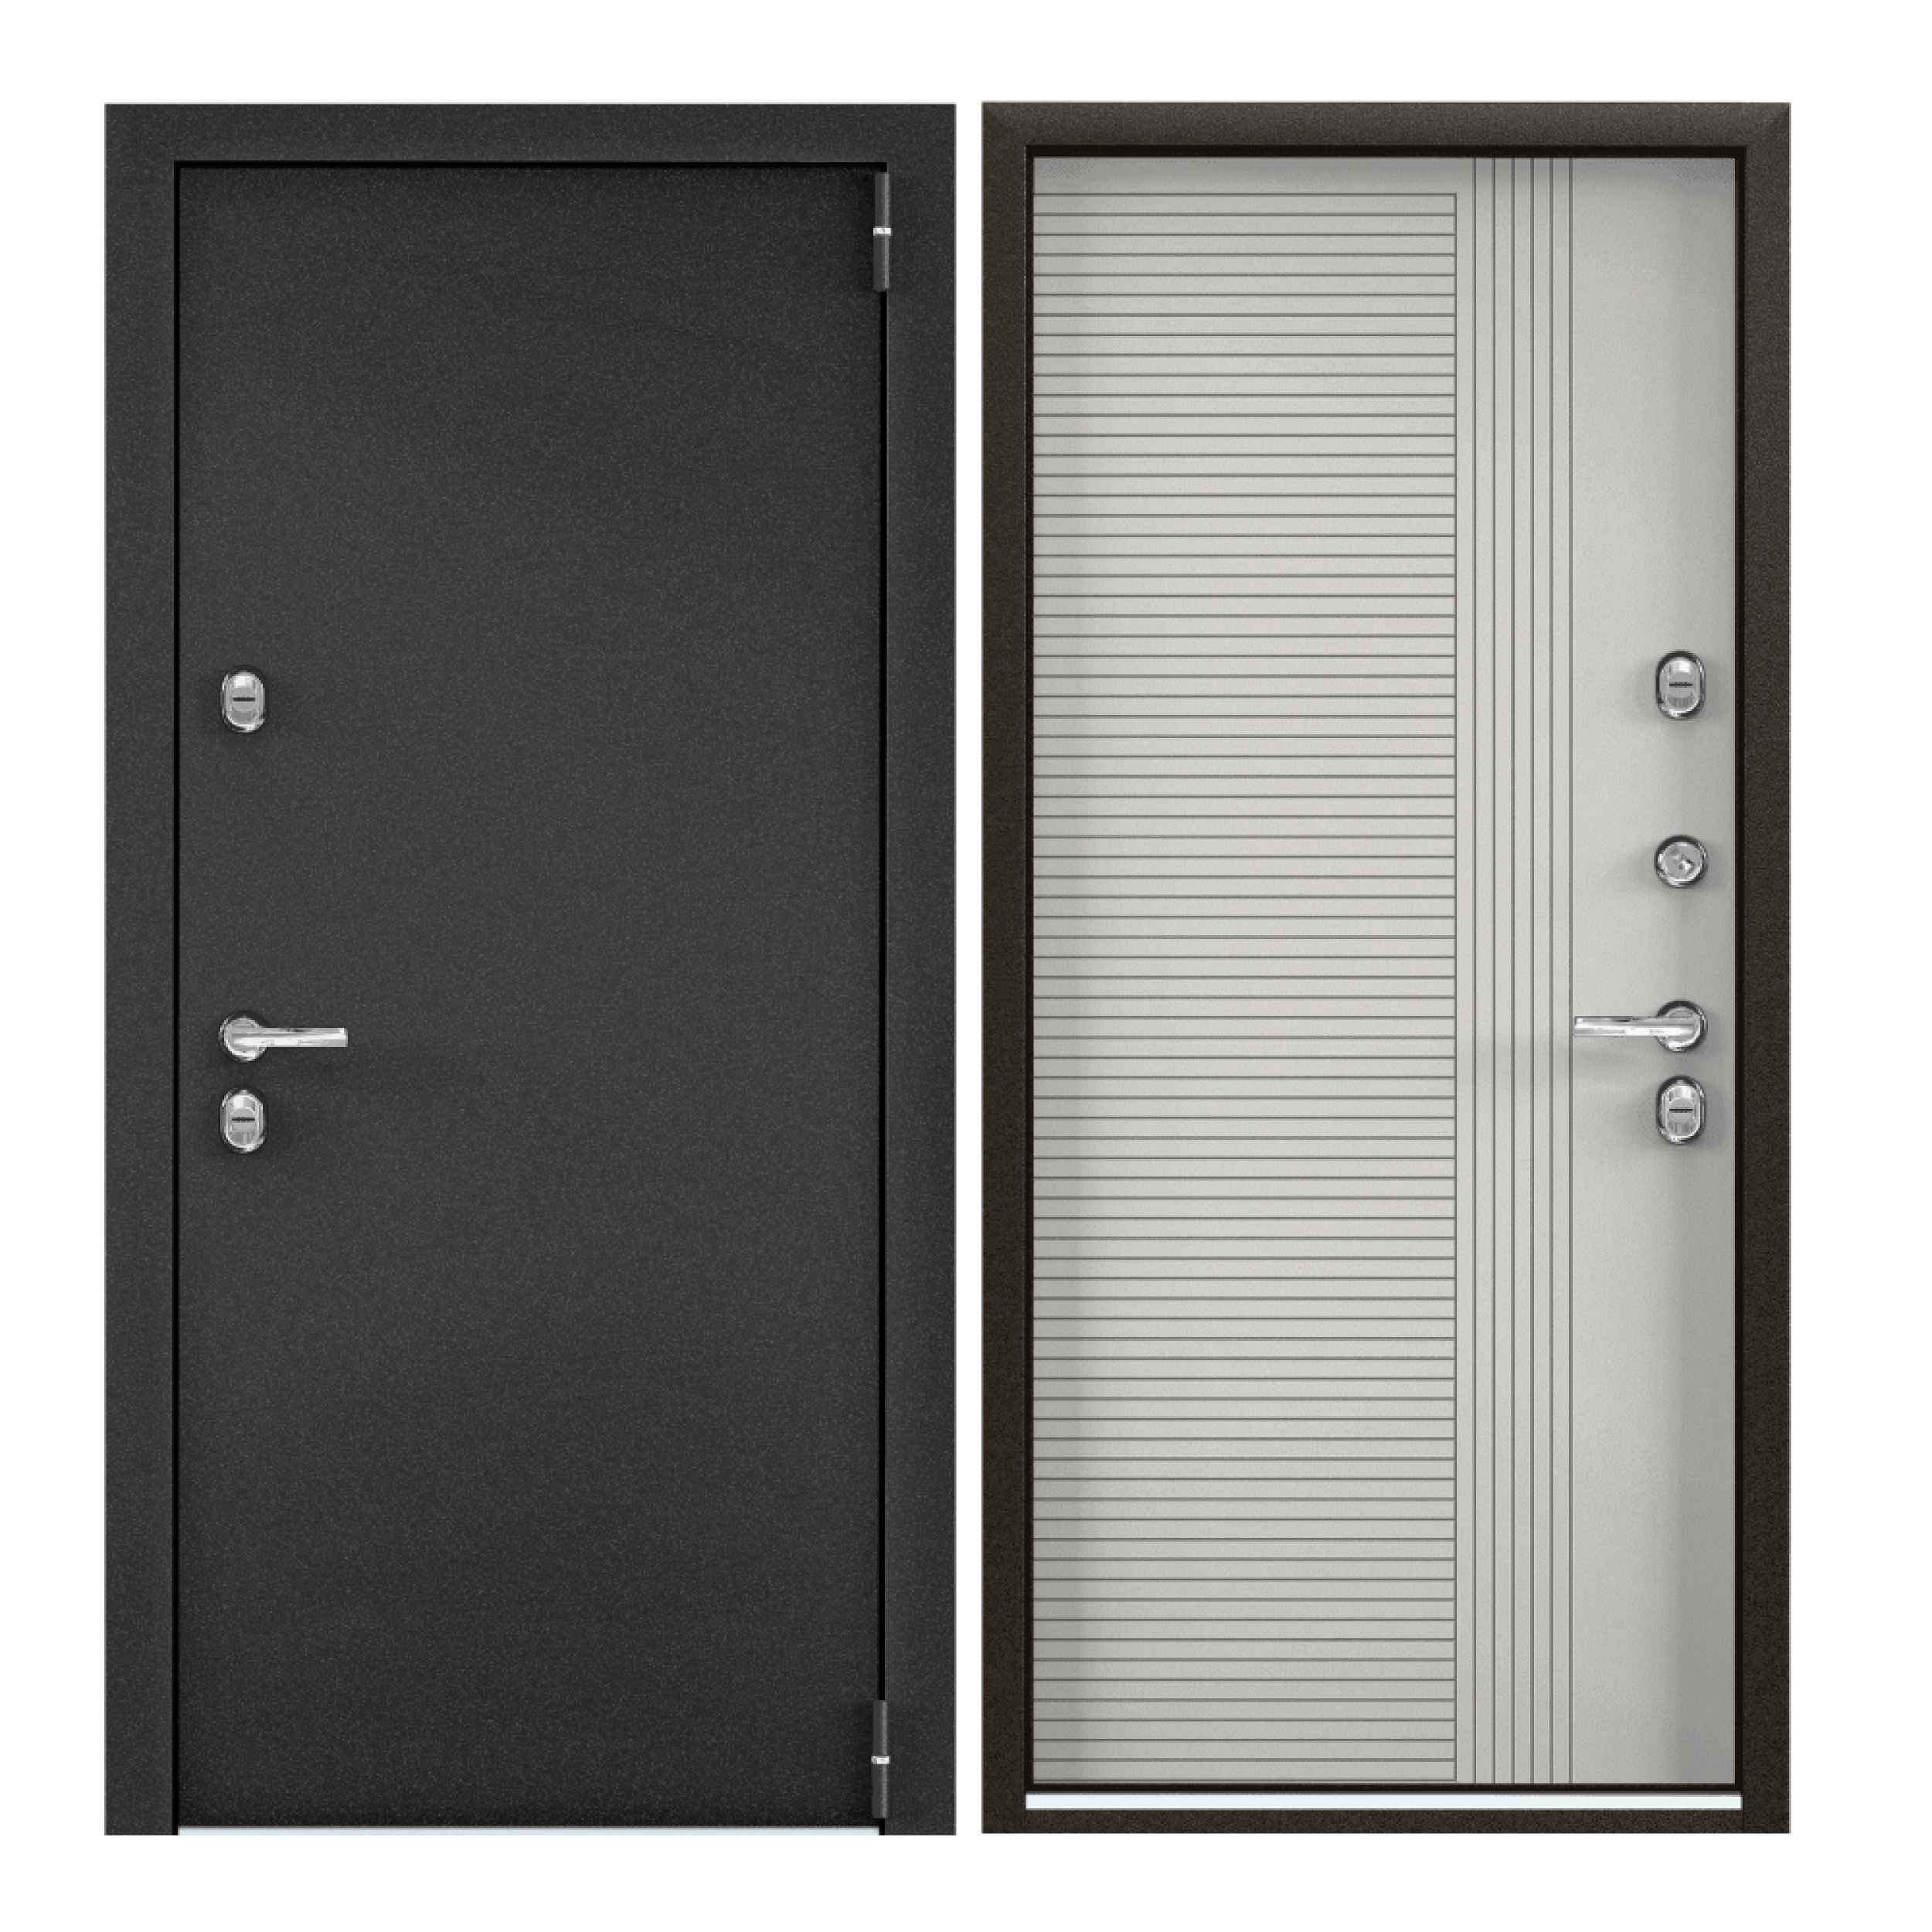 Дверь входная Torex для дома Village advanced 950х2050 правый, терморазрыв, тепло-шумоизоляция, антикоррозийная защита, замки 4го и 3го класса, серый